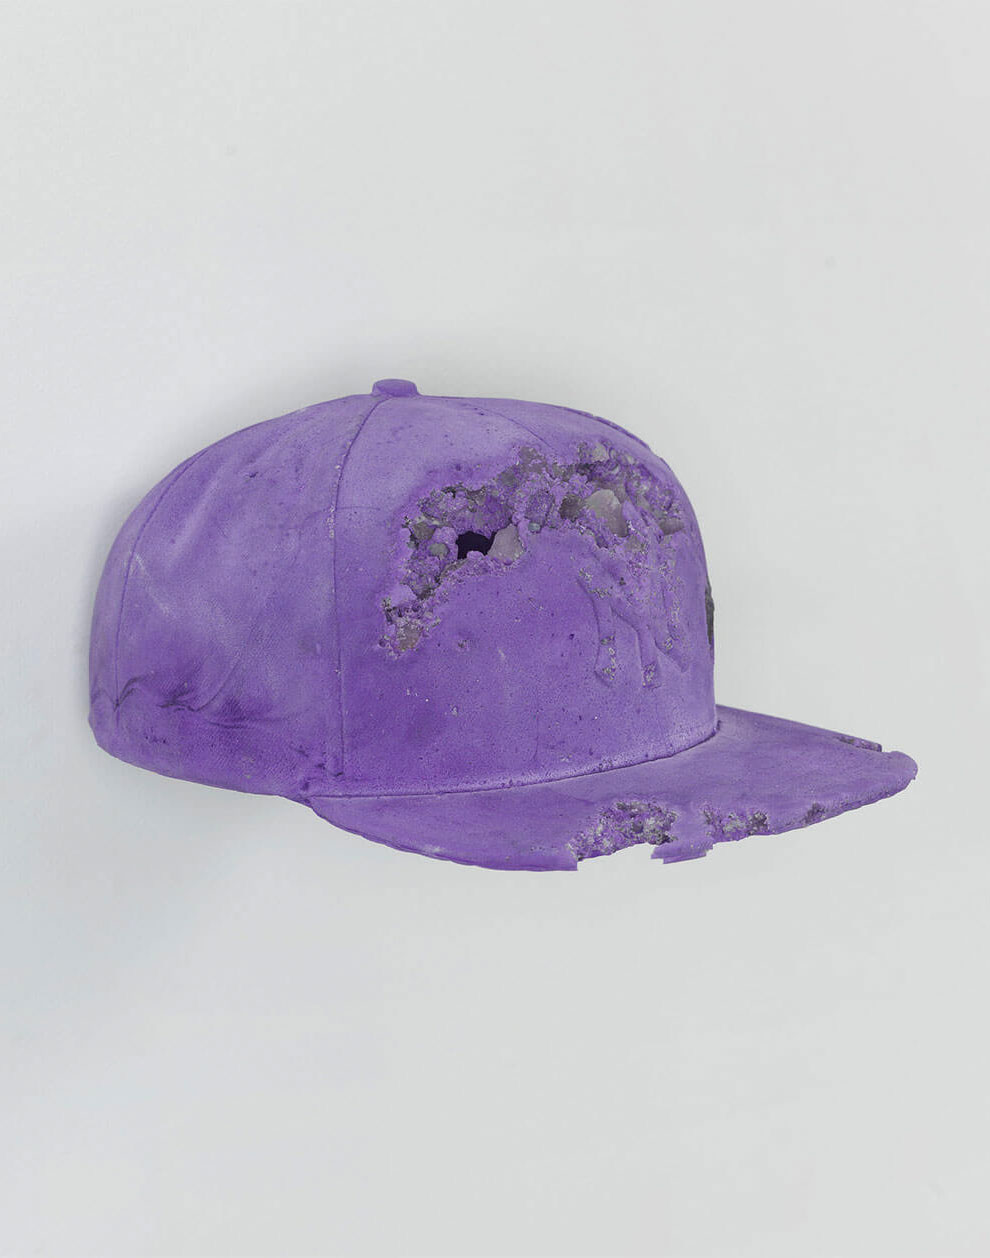 a purple hat